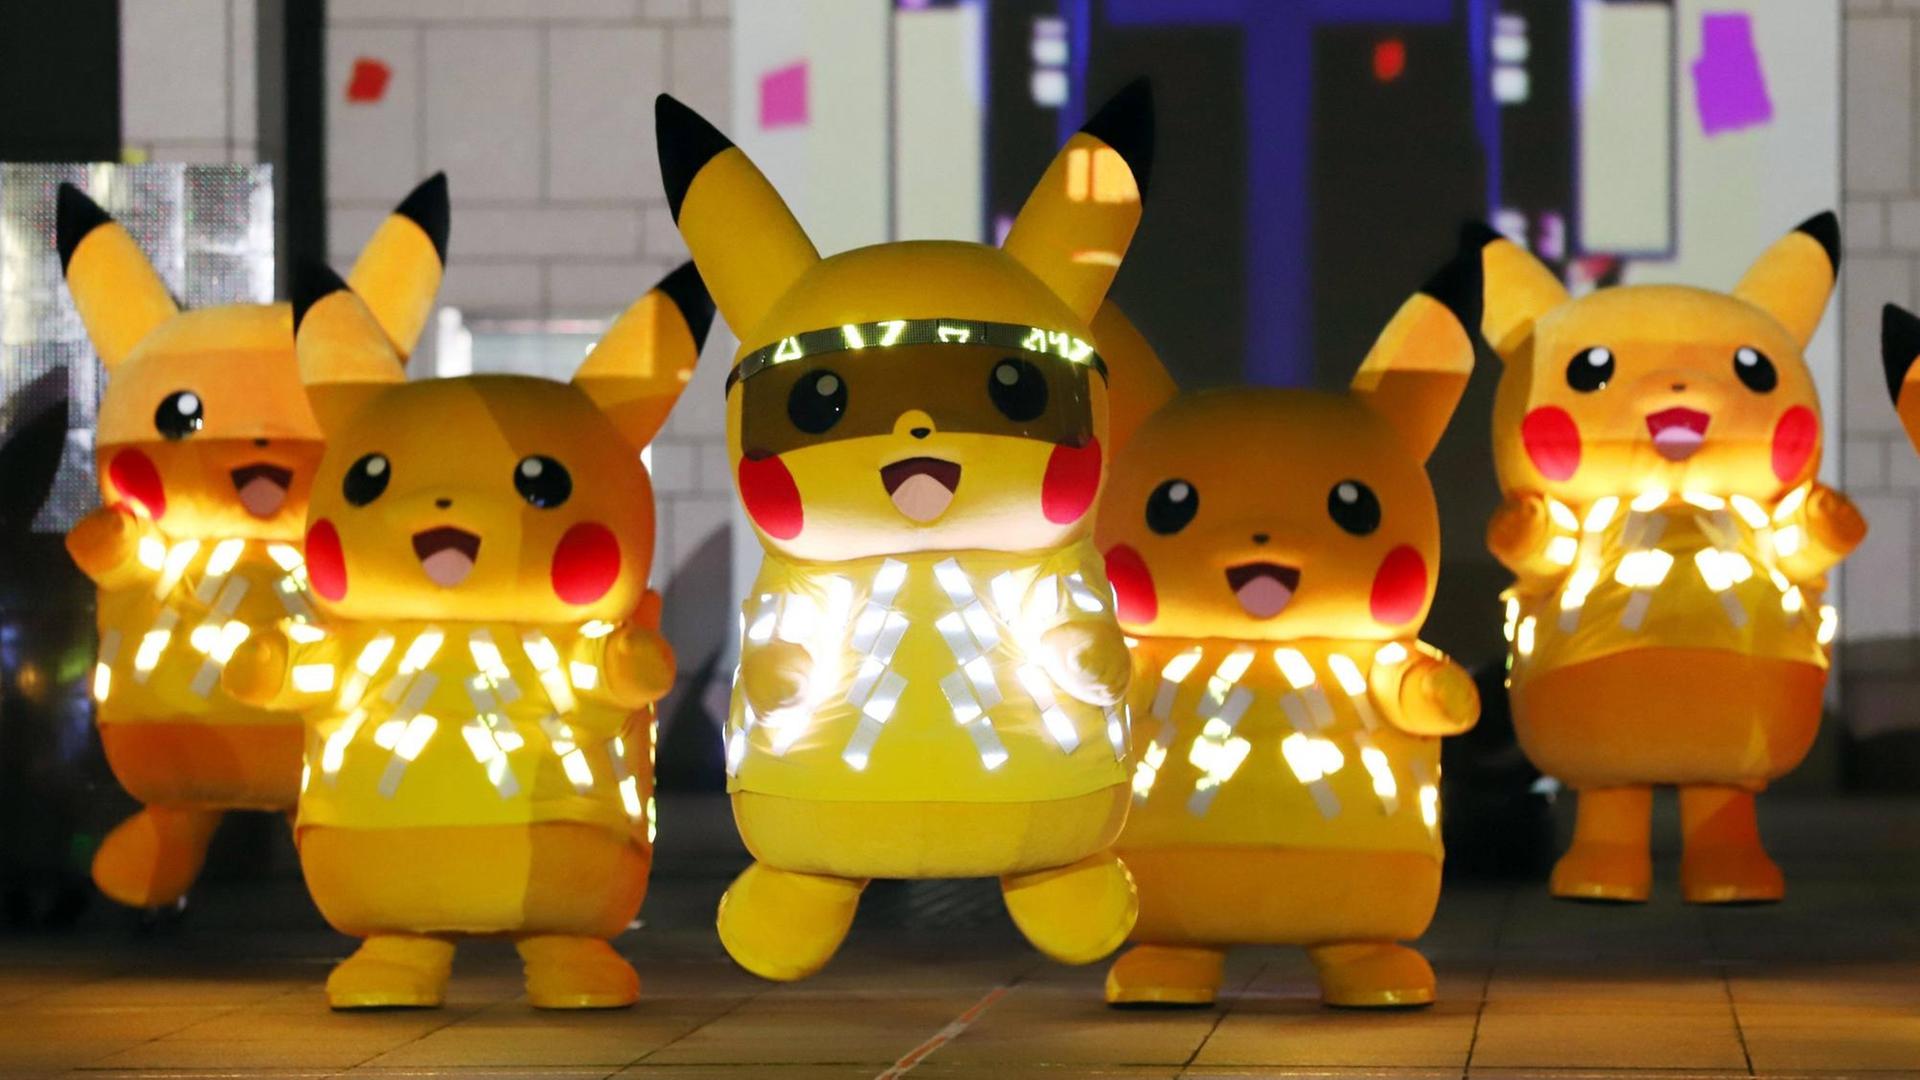 Fünf menschengroße Pikachus (ein gelbes. hasenähnliches Wesen mit langen Ohren, die an der Spitze schwarz sind) mit LED-Lichtern tanzen auf einer Bühne.